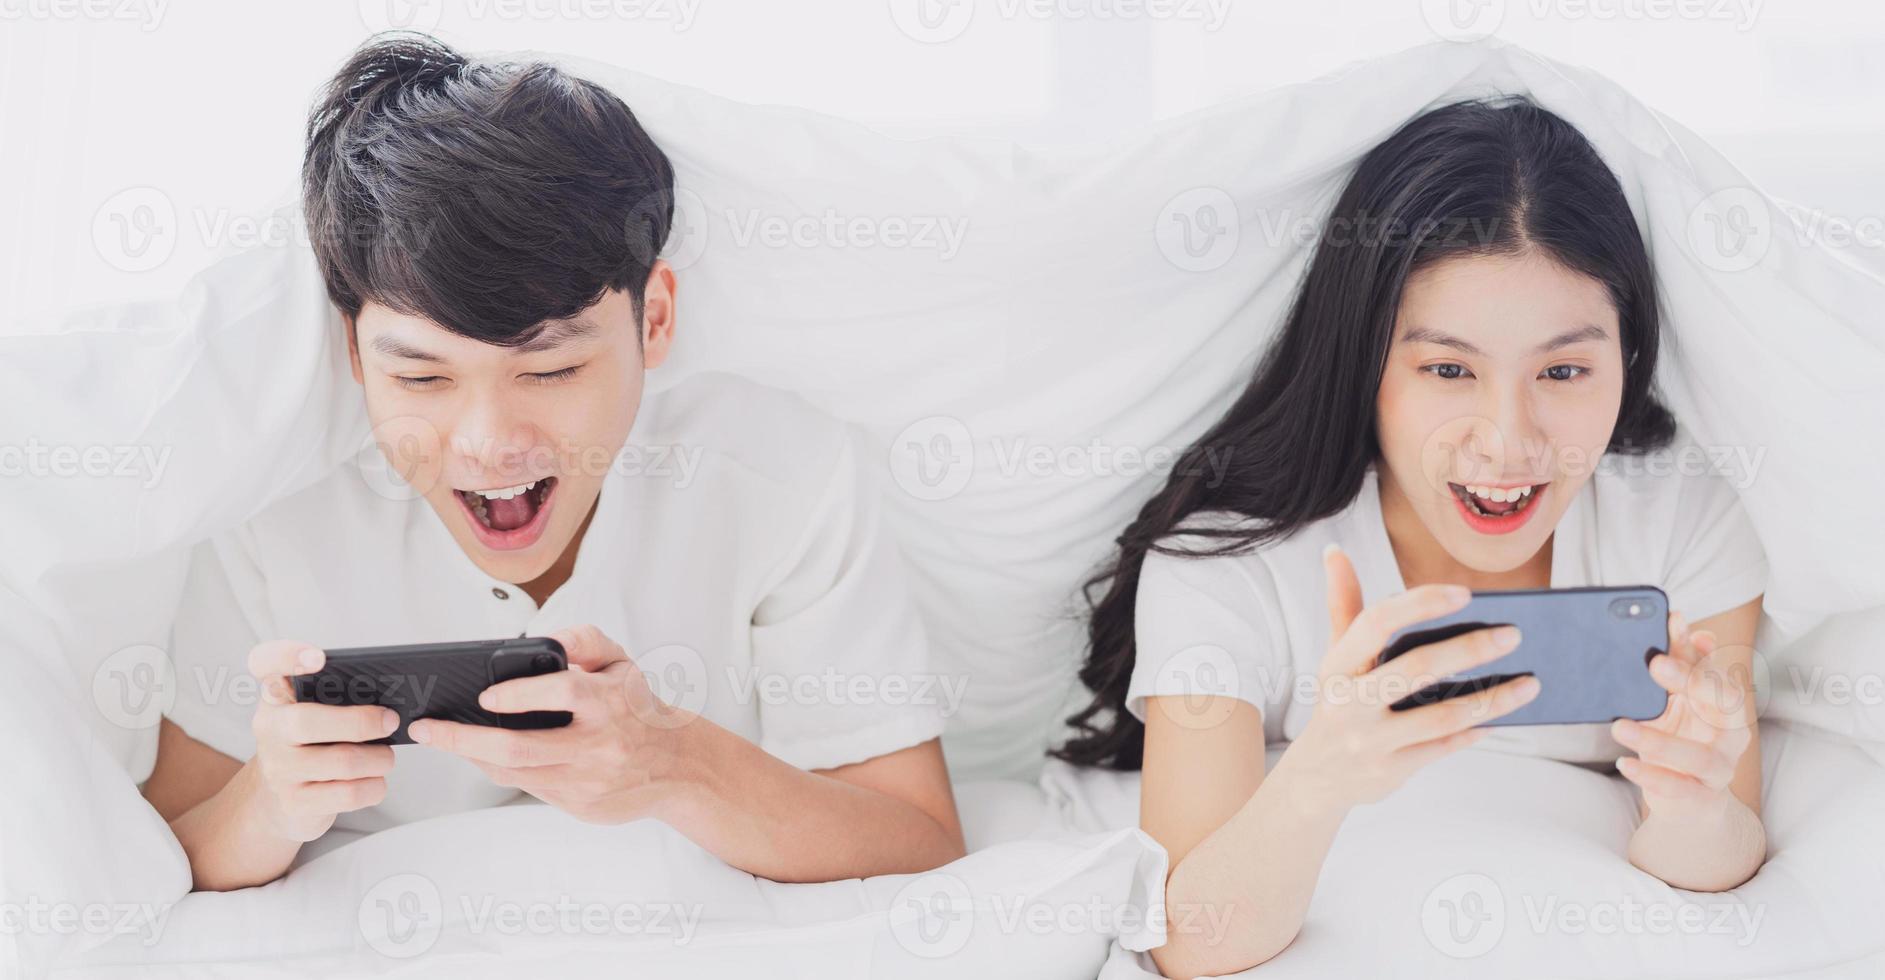 junges Paar mit Telefon im Bett mit fröhlichen Ausdrücken expression foto